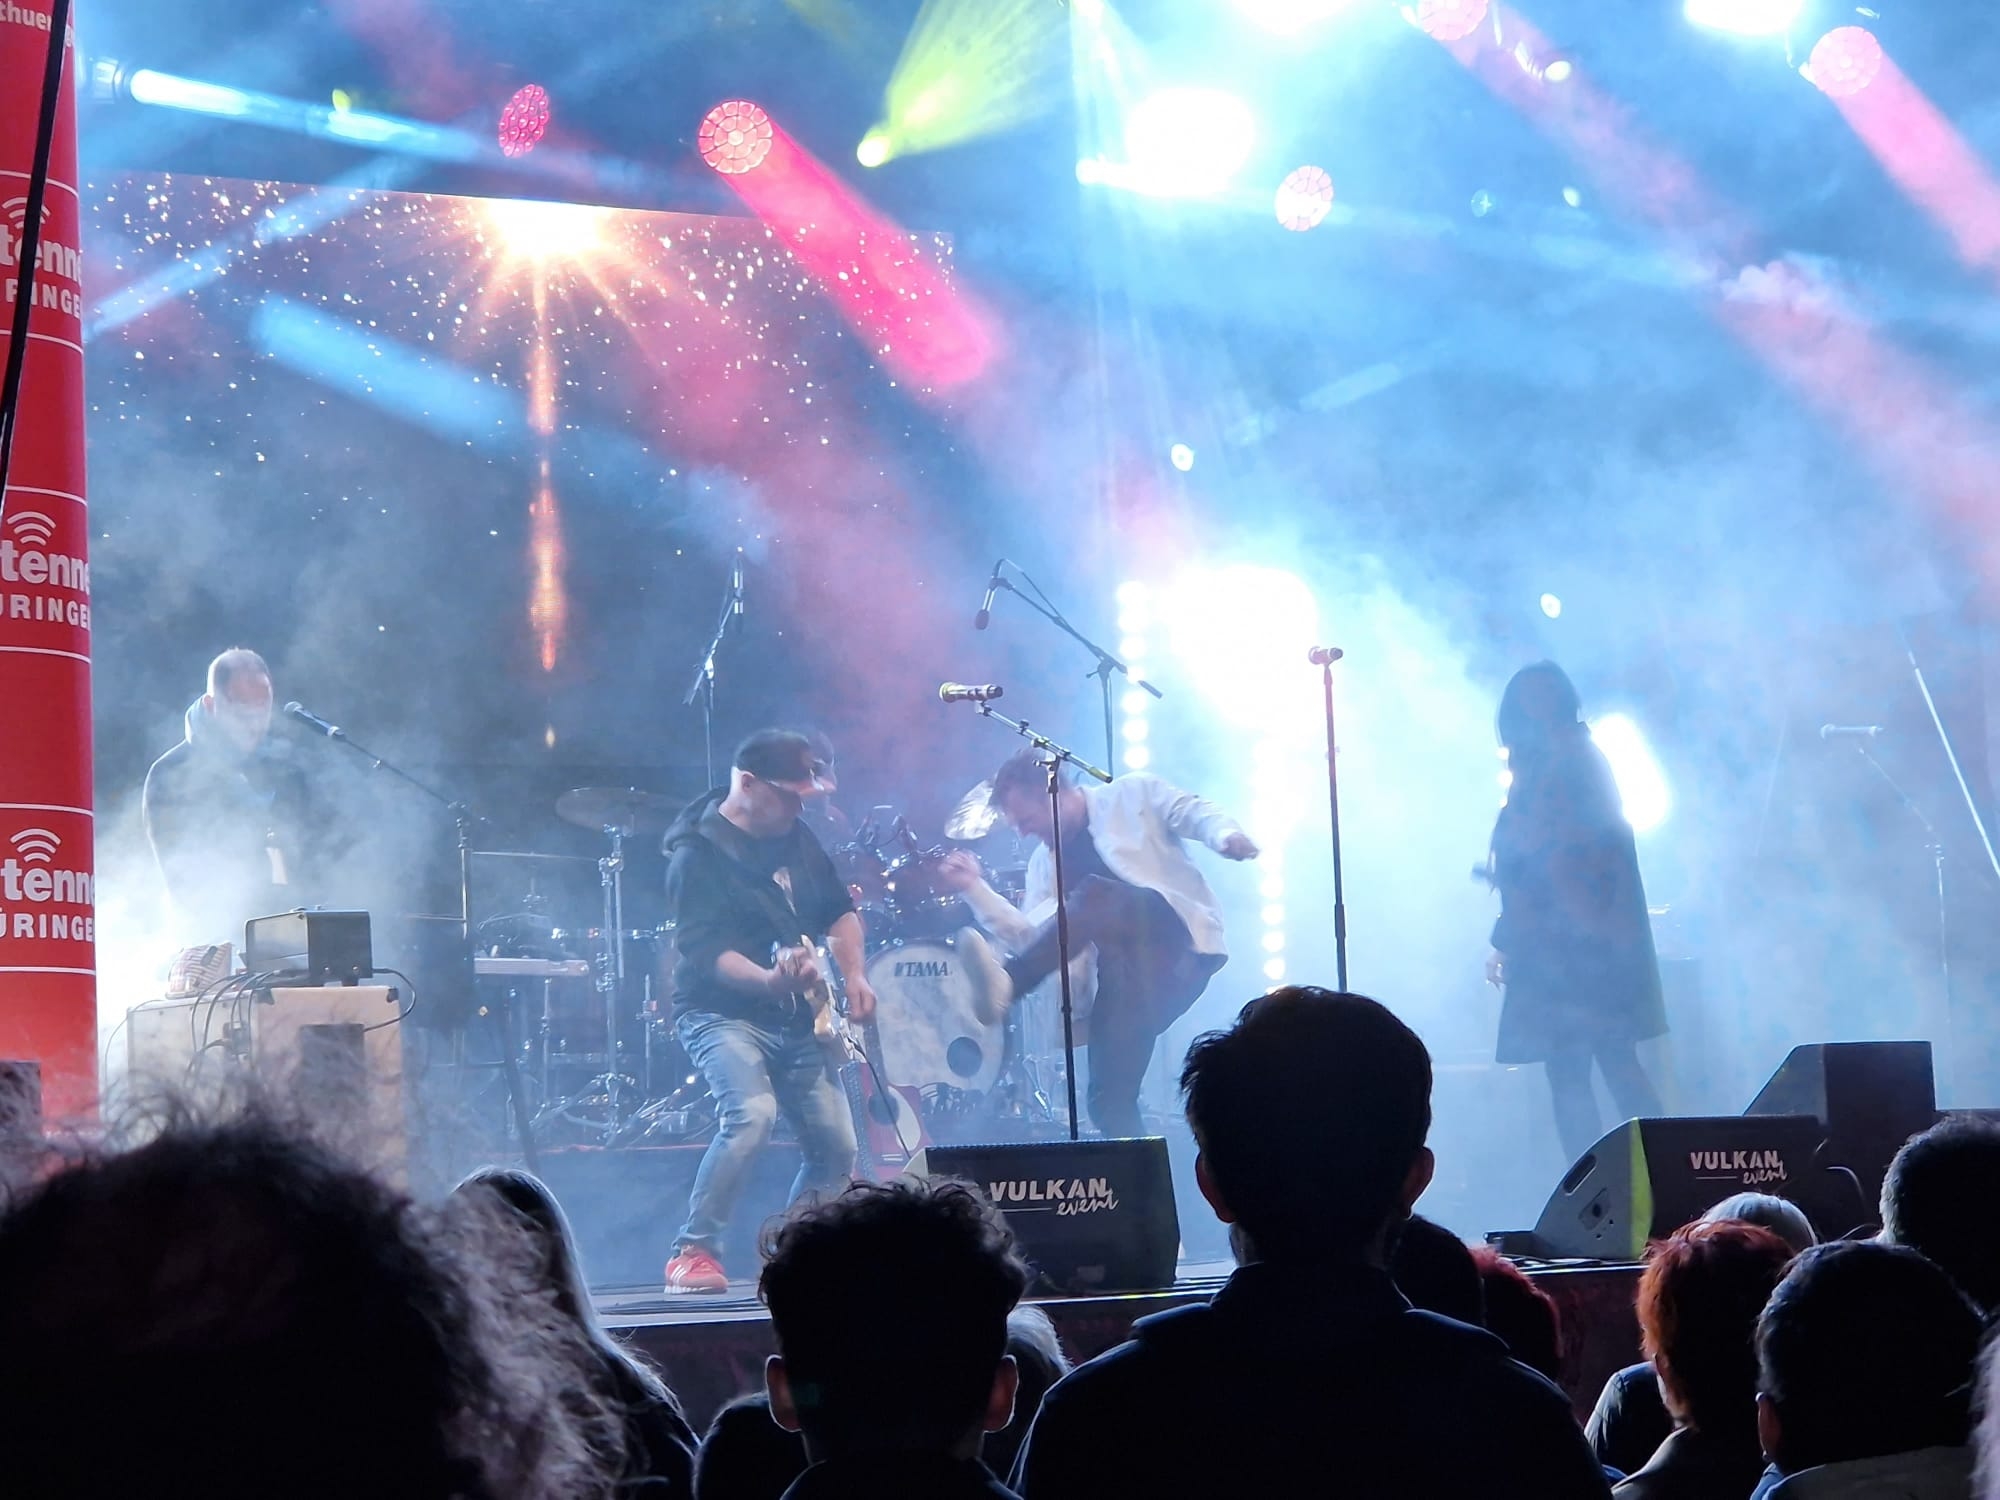 Bühne mit Band und Publikum davor bei einem Stadtfest